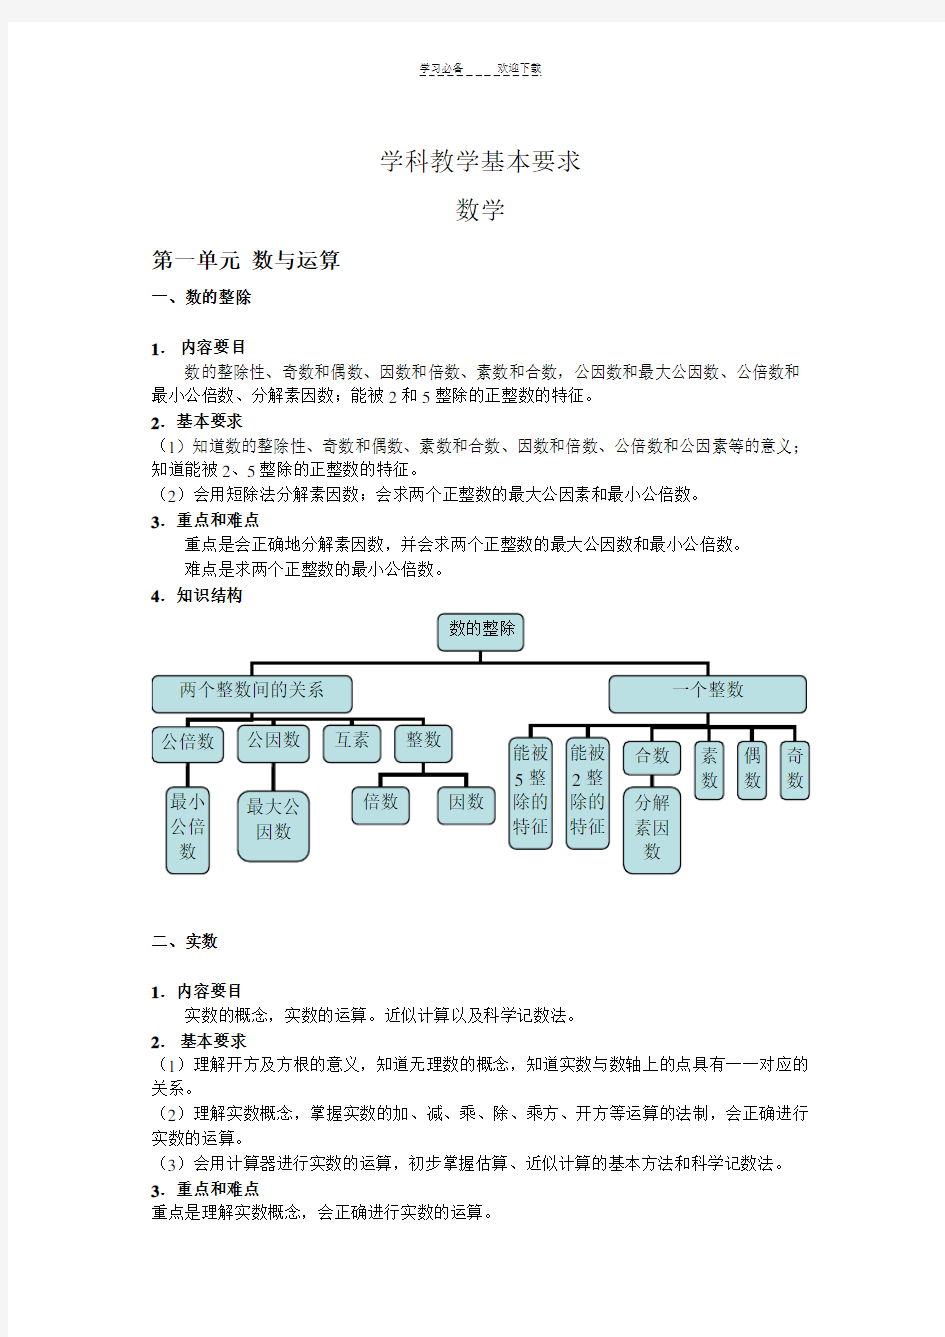 上海中考学科教学基本要求(完整版)-初中数学